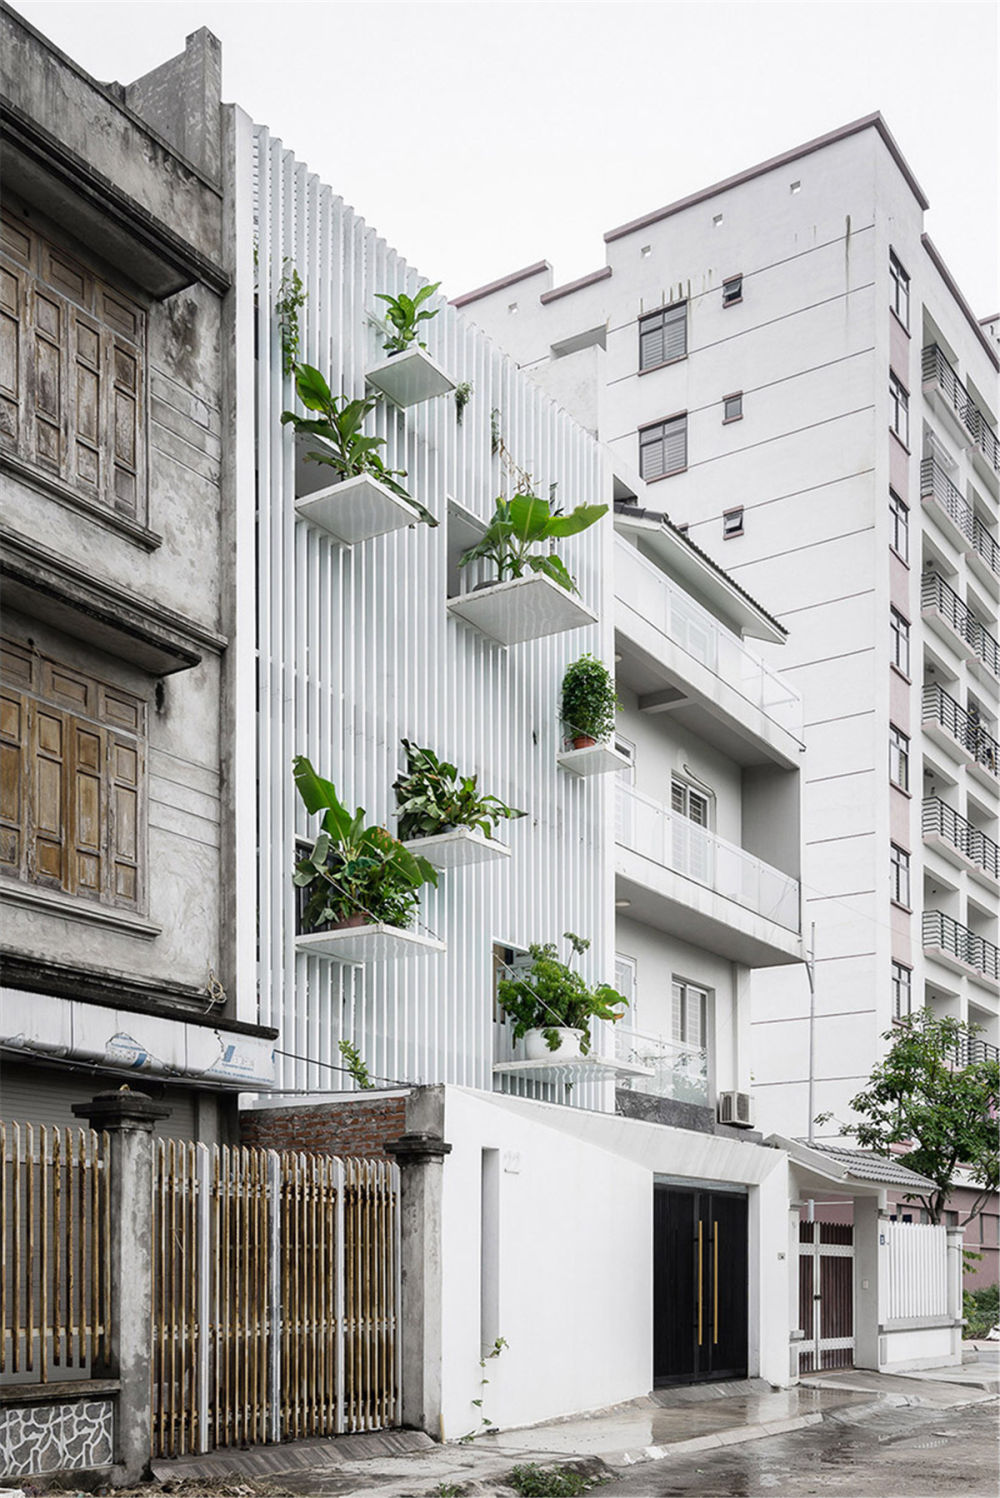 DANstudio-TH-house-tree-balconies-hanoi-vietnam-designboom-08.jpg